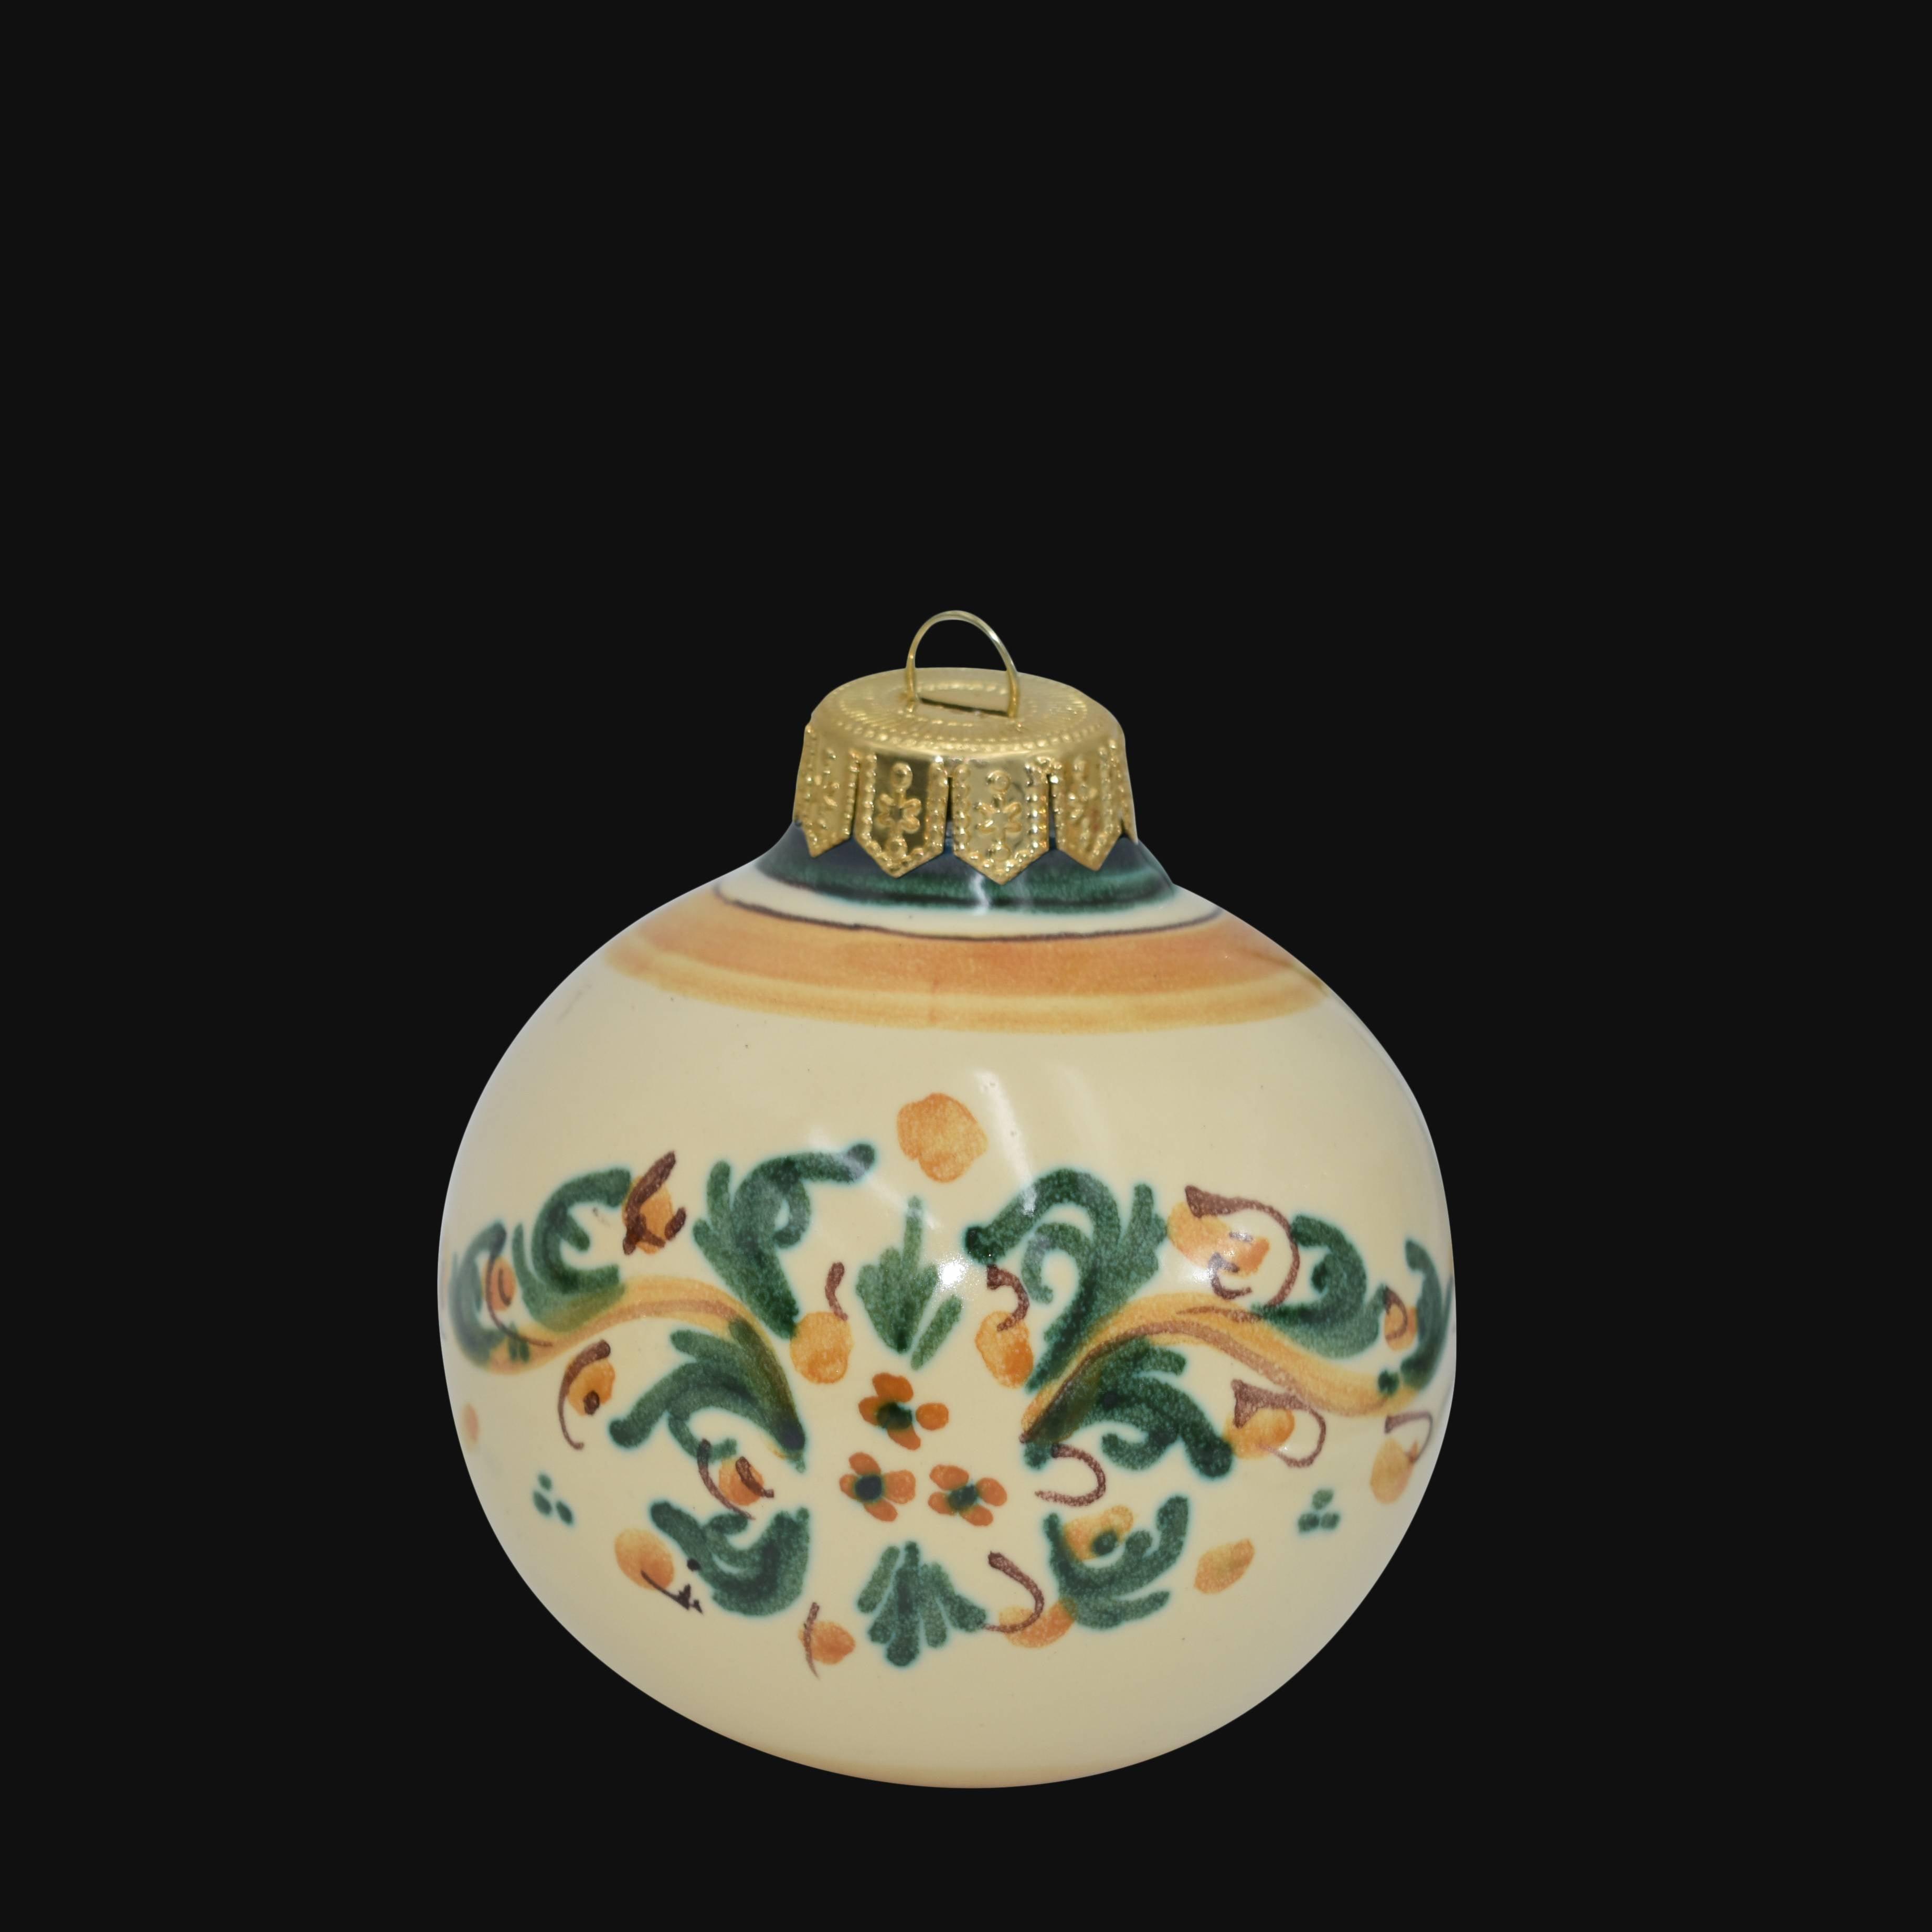 Pallina natalizia Ø 8 s. d'arte verde/arancio - Natale a Caltagirone - Ceramiche di Caltagirone Sofia